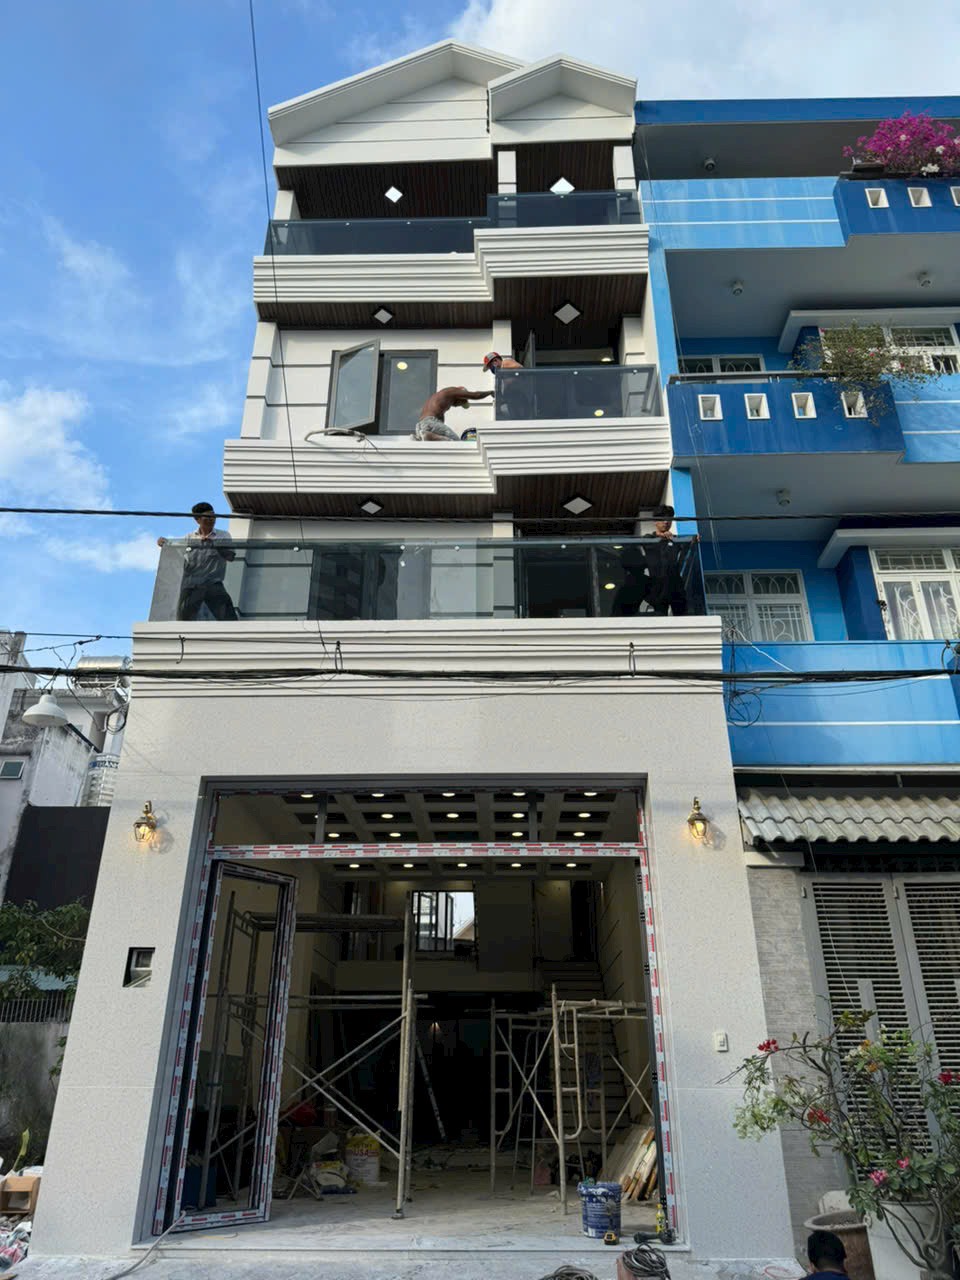 Bán nhà 3 lầu khu Vạn Phát Hưng, Hoàng Quốc Việt, Quận 7, Dt 5x16m. giá 14,8 tỷ.